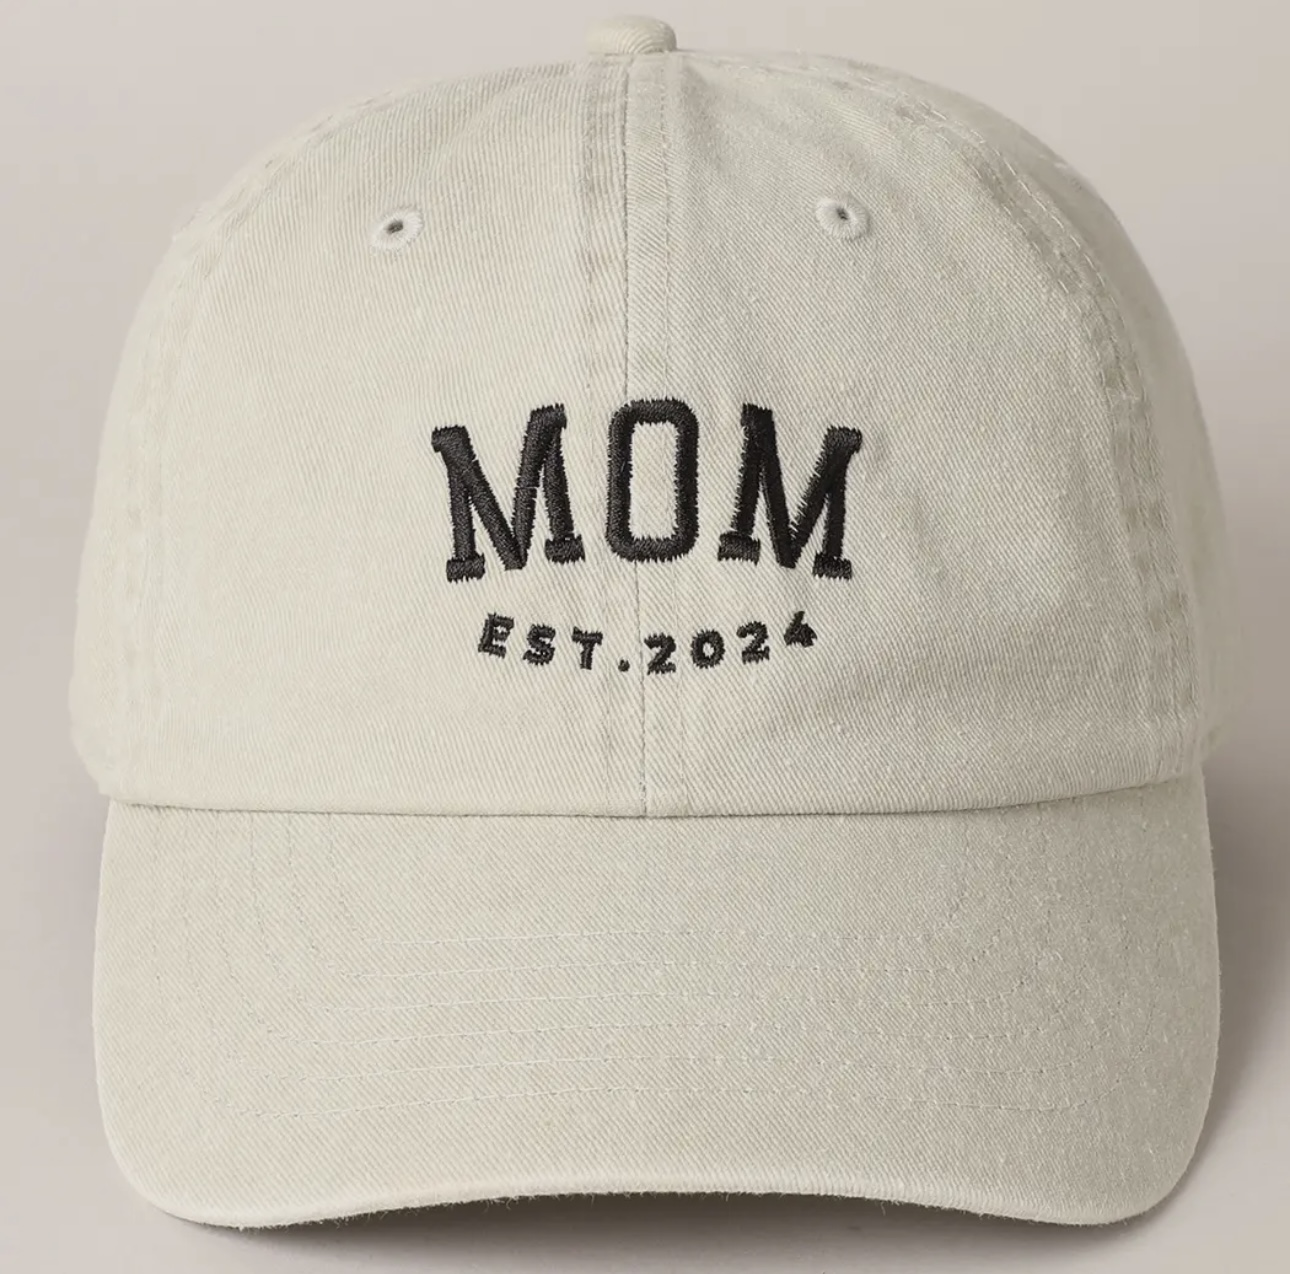 Mom baseball hats